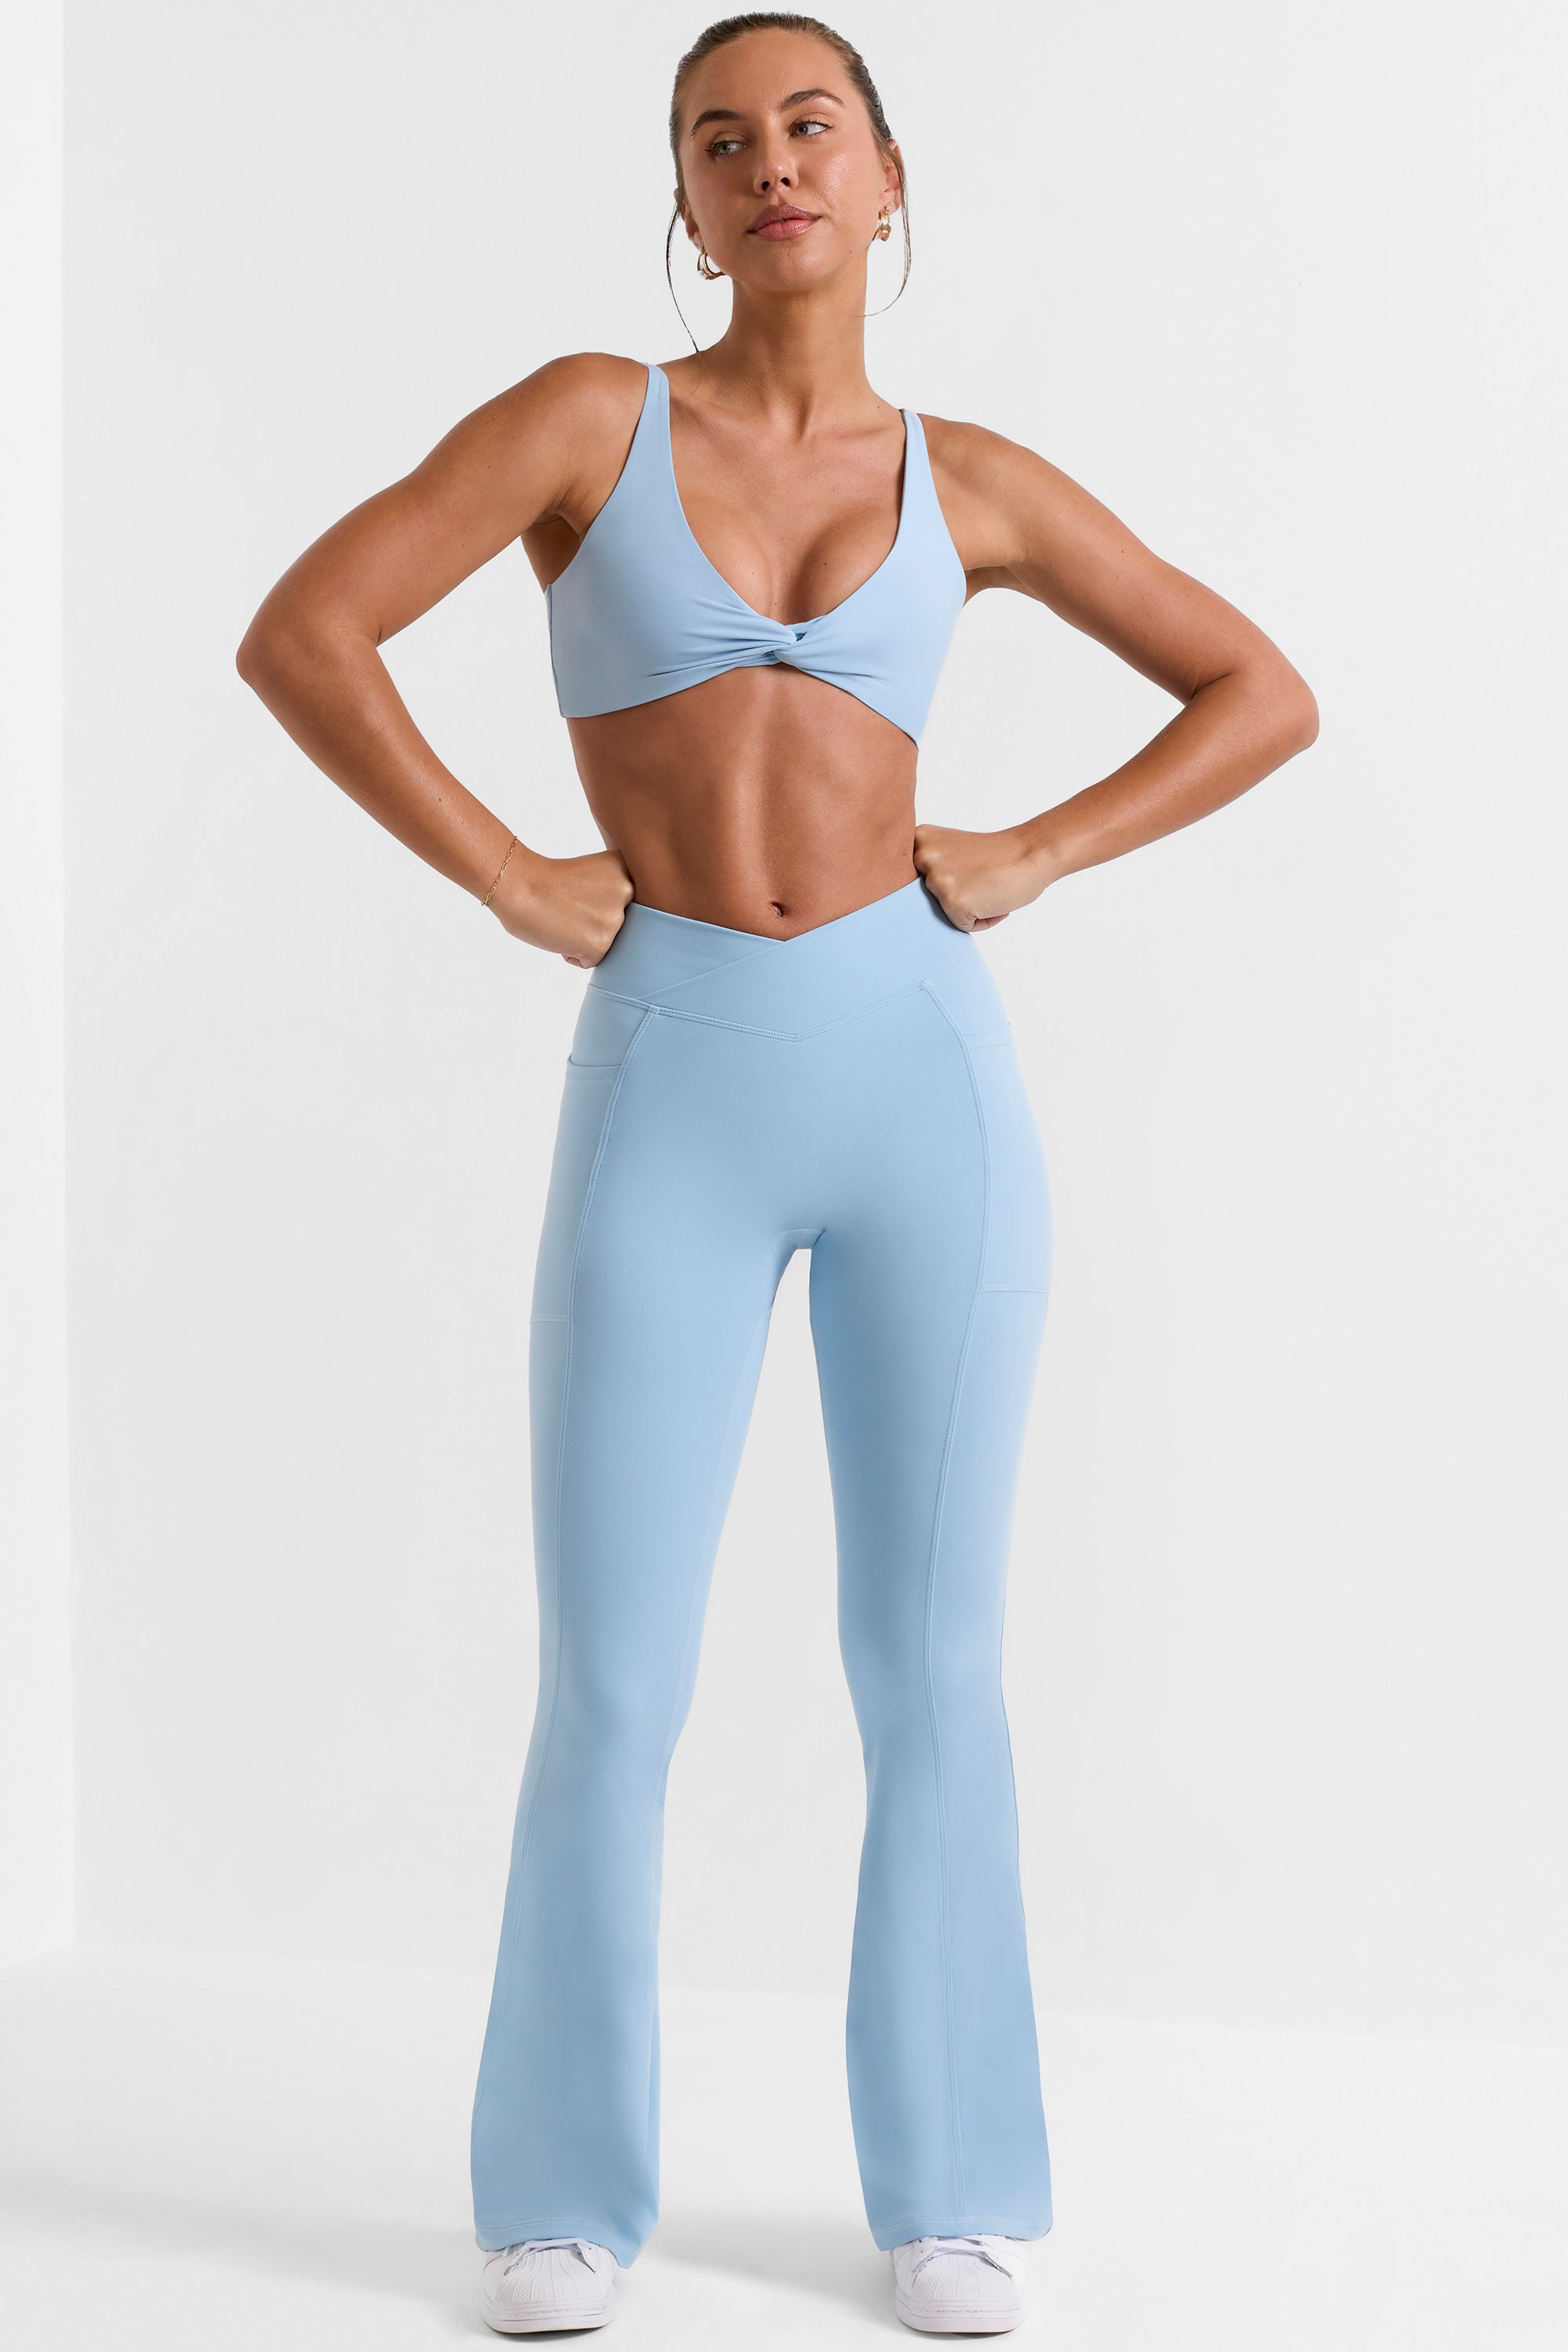 Auburet Women's Yoga Pants Work Pants Crossover Split Hem Full Length Flare  Leggings with Pocket - Walmart.com